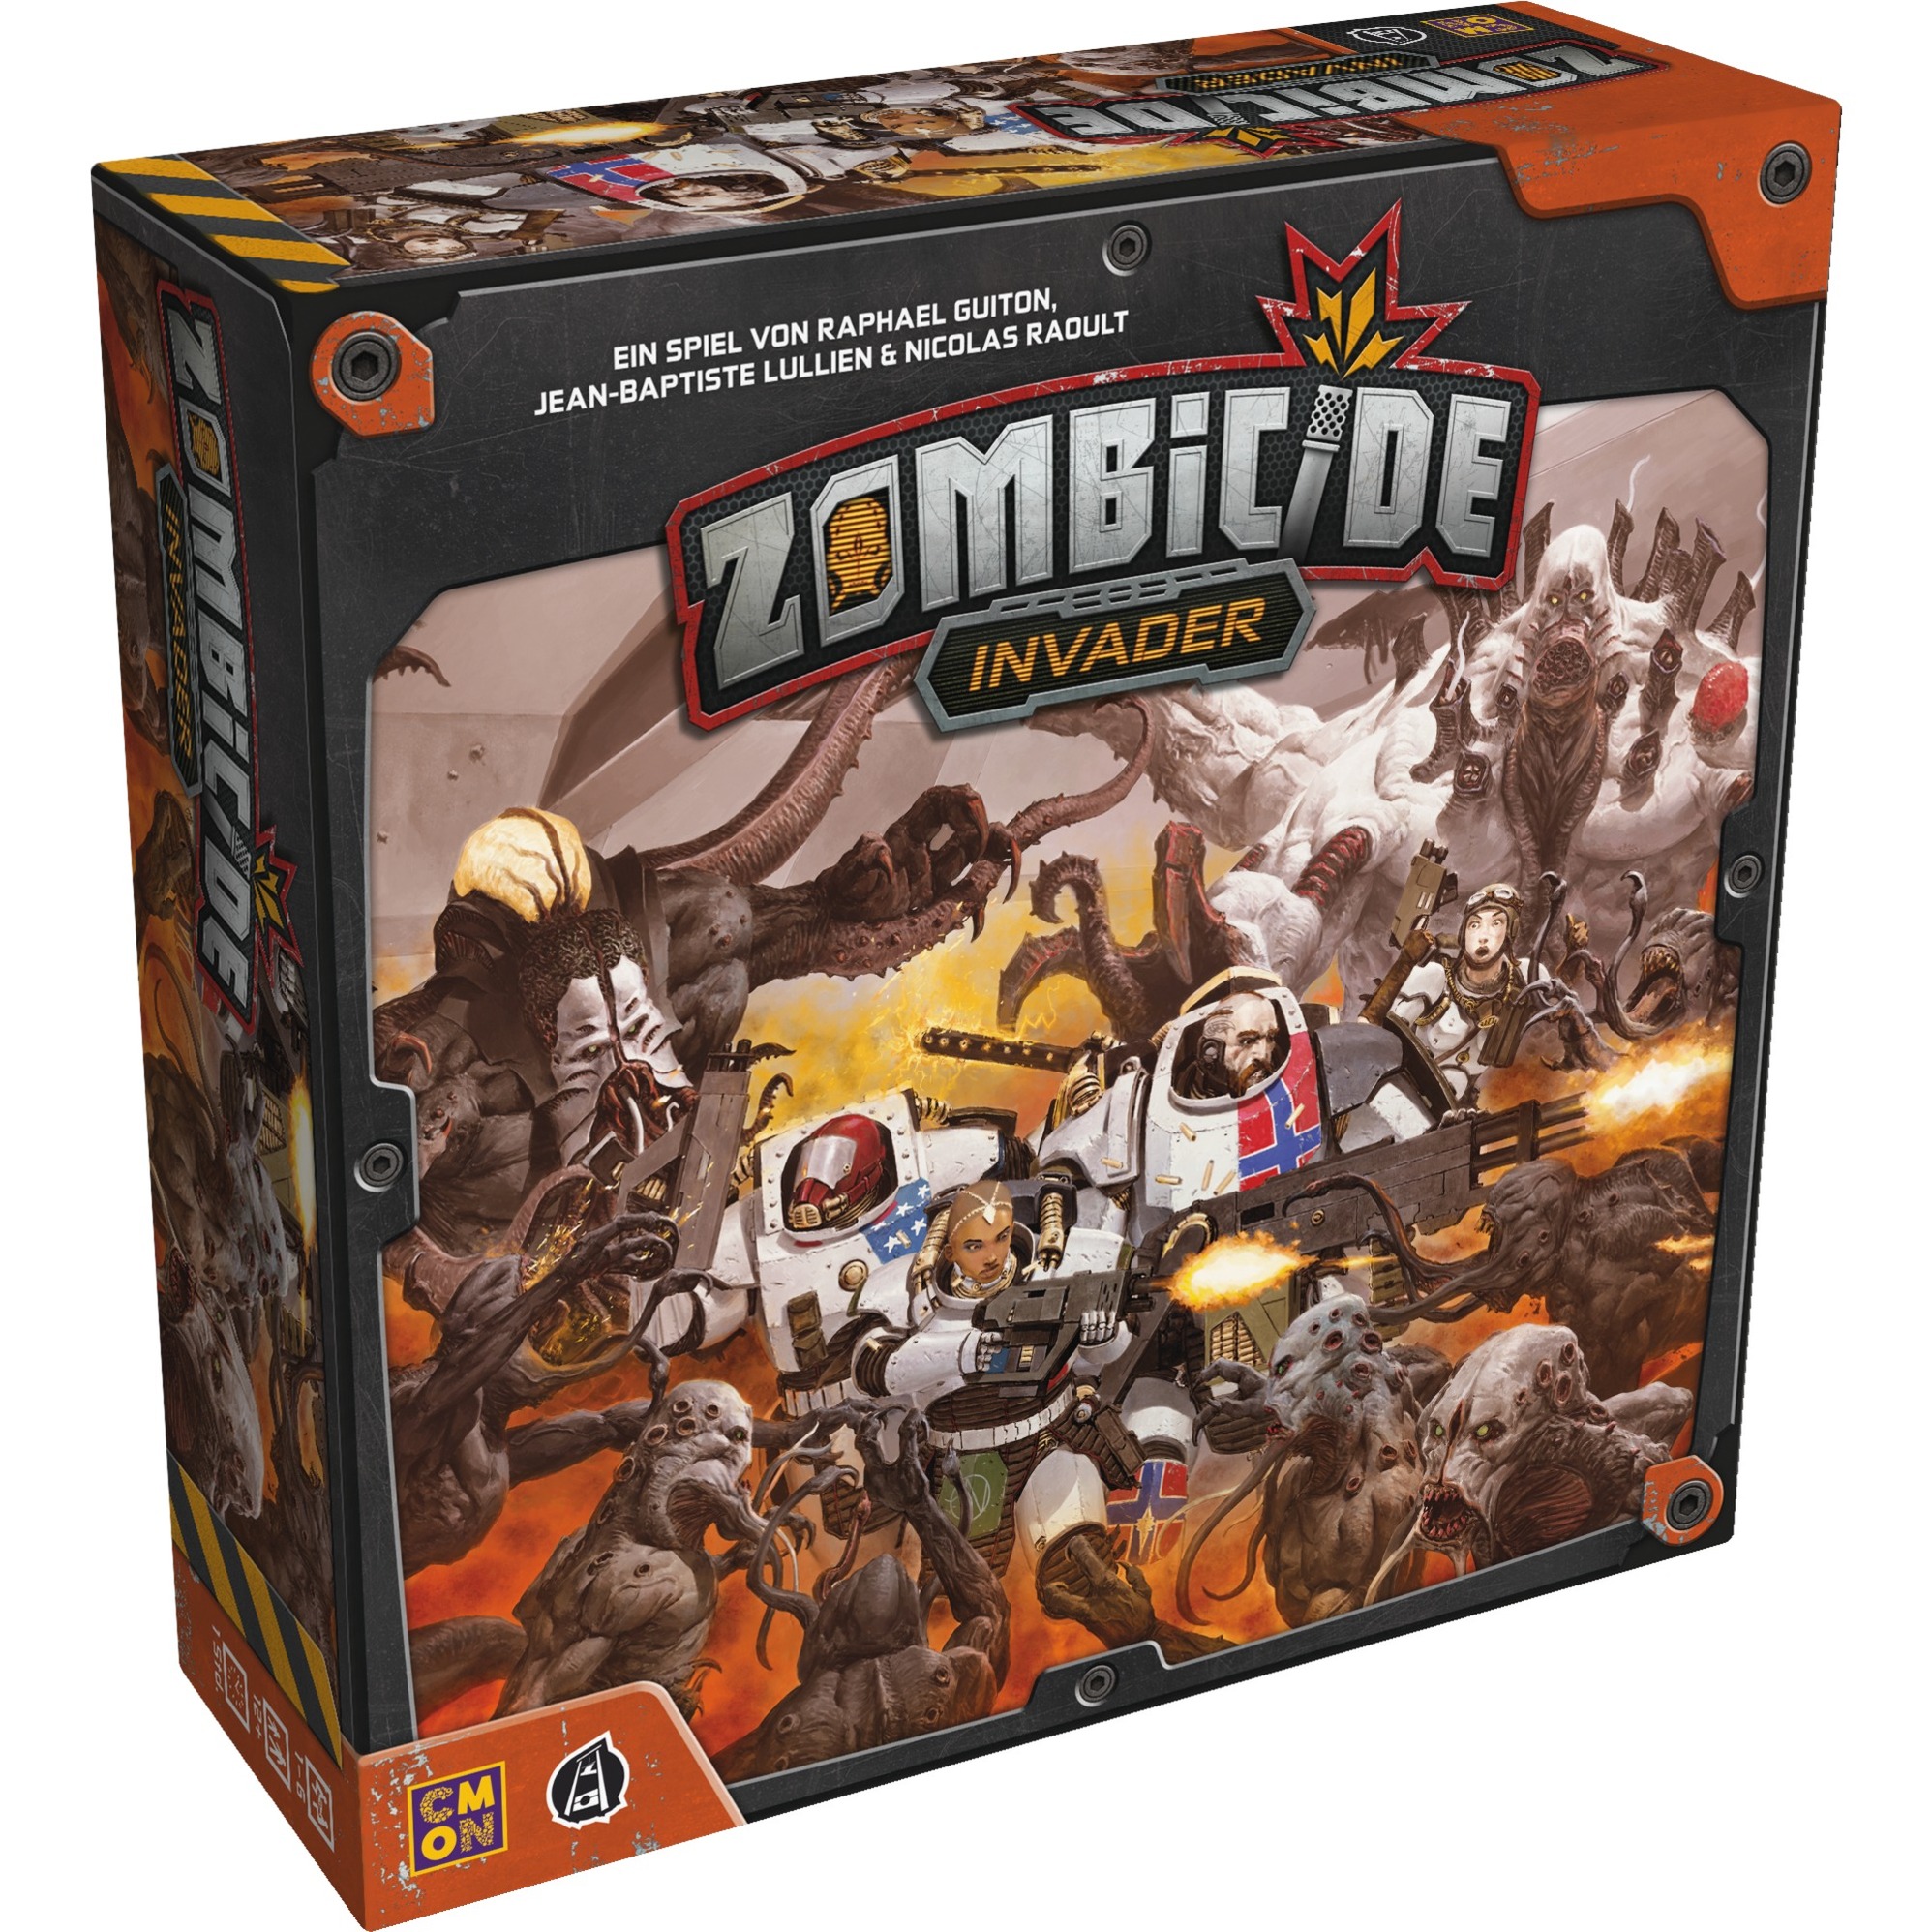 Image of Alternate - Zombicide: Invader, Brettspiel online einkaufen bei Alternate